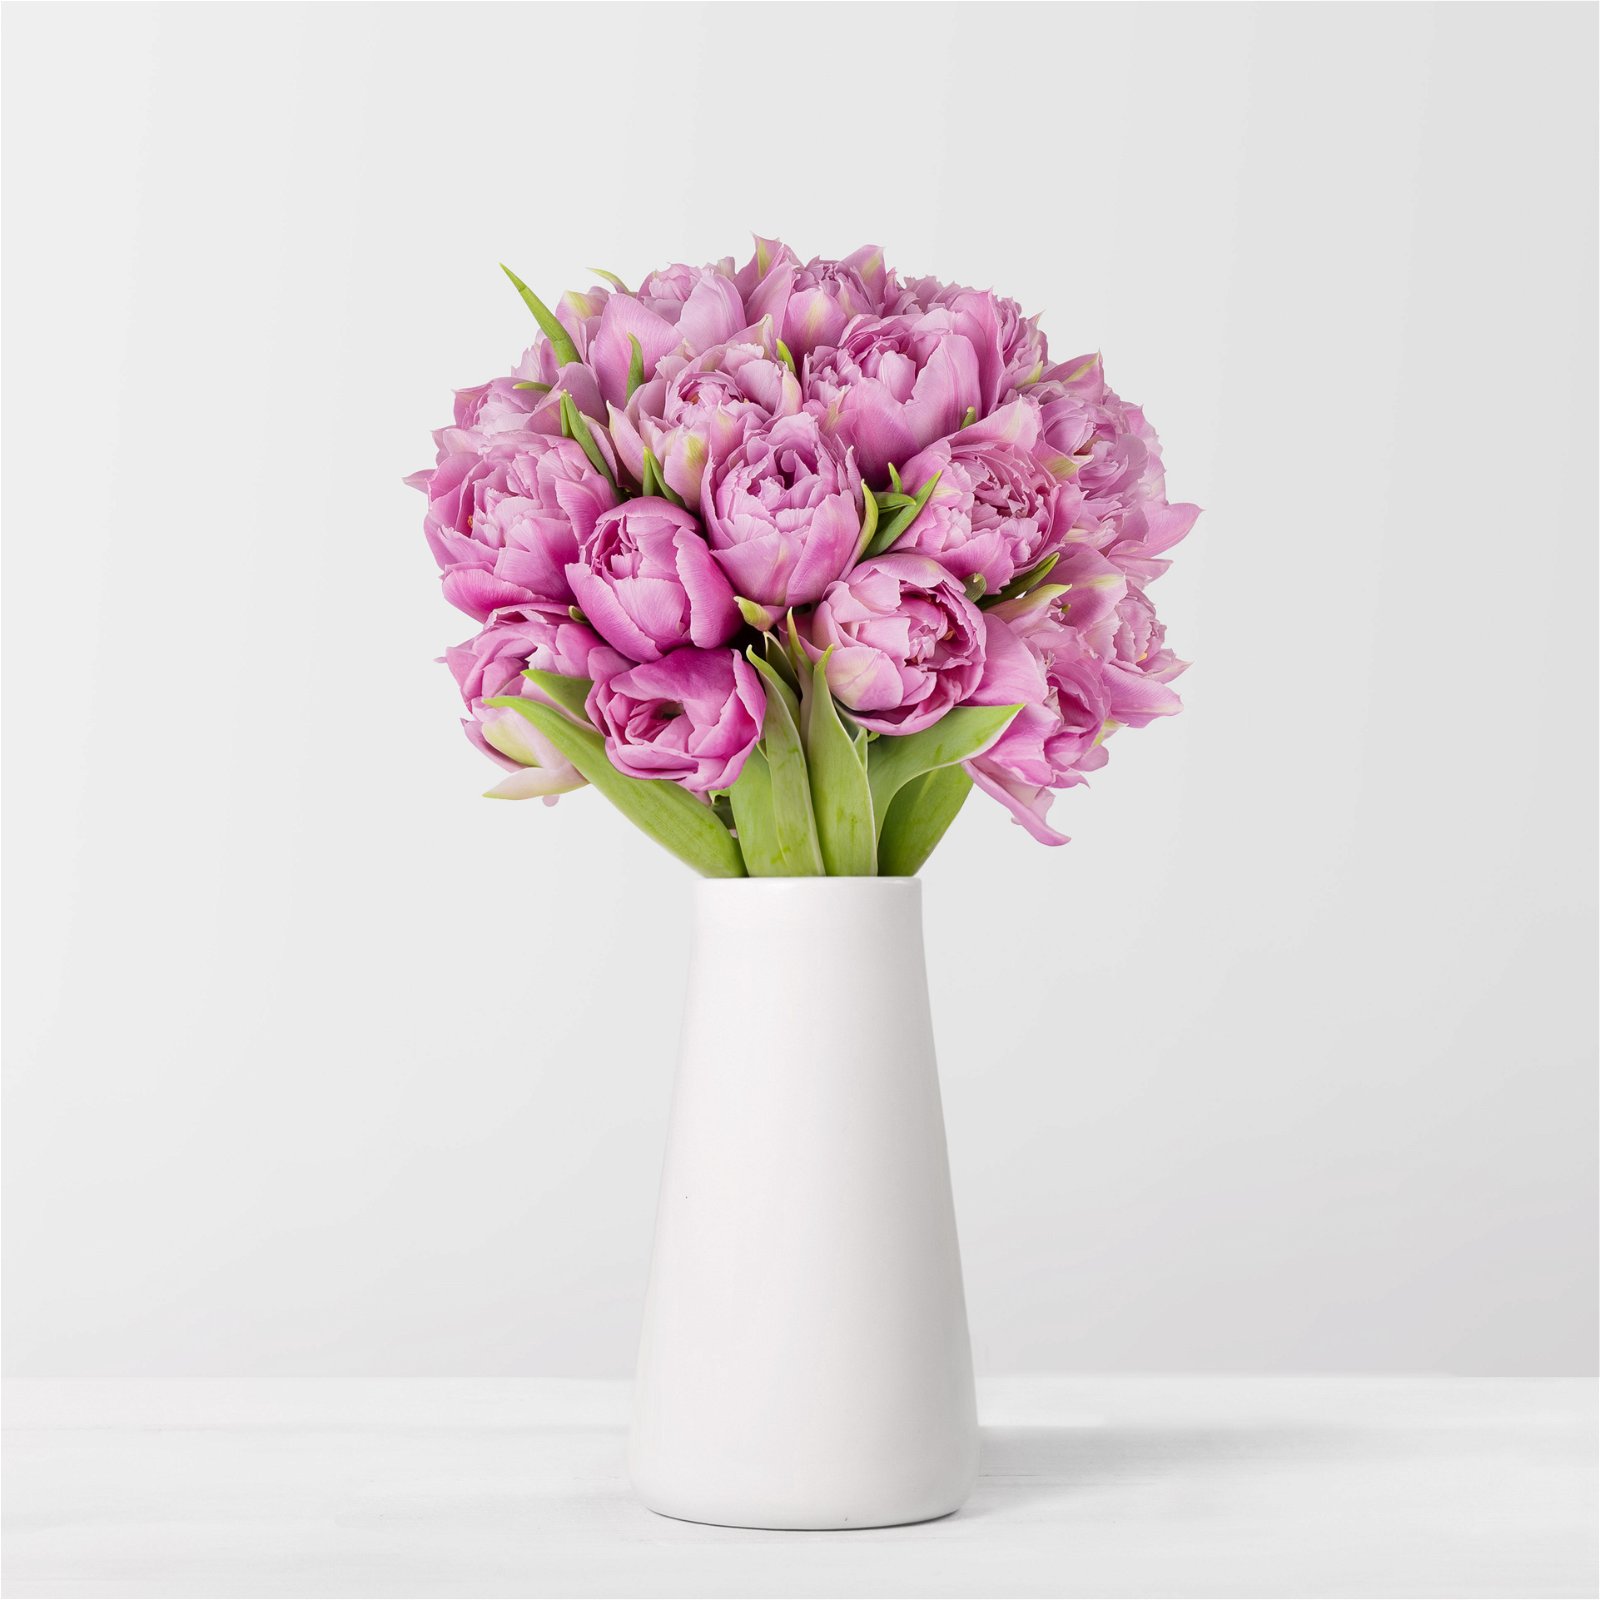 Blumenbund mit Tulpen 'Double Price', 30er-Bund, lila, inkl. gratis Grußkarte